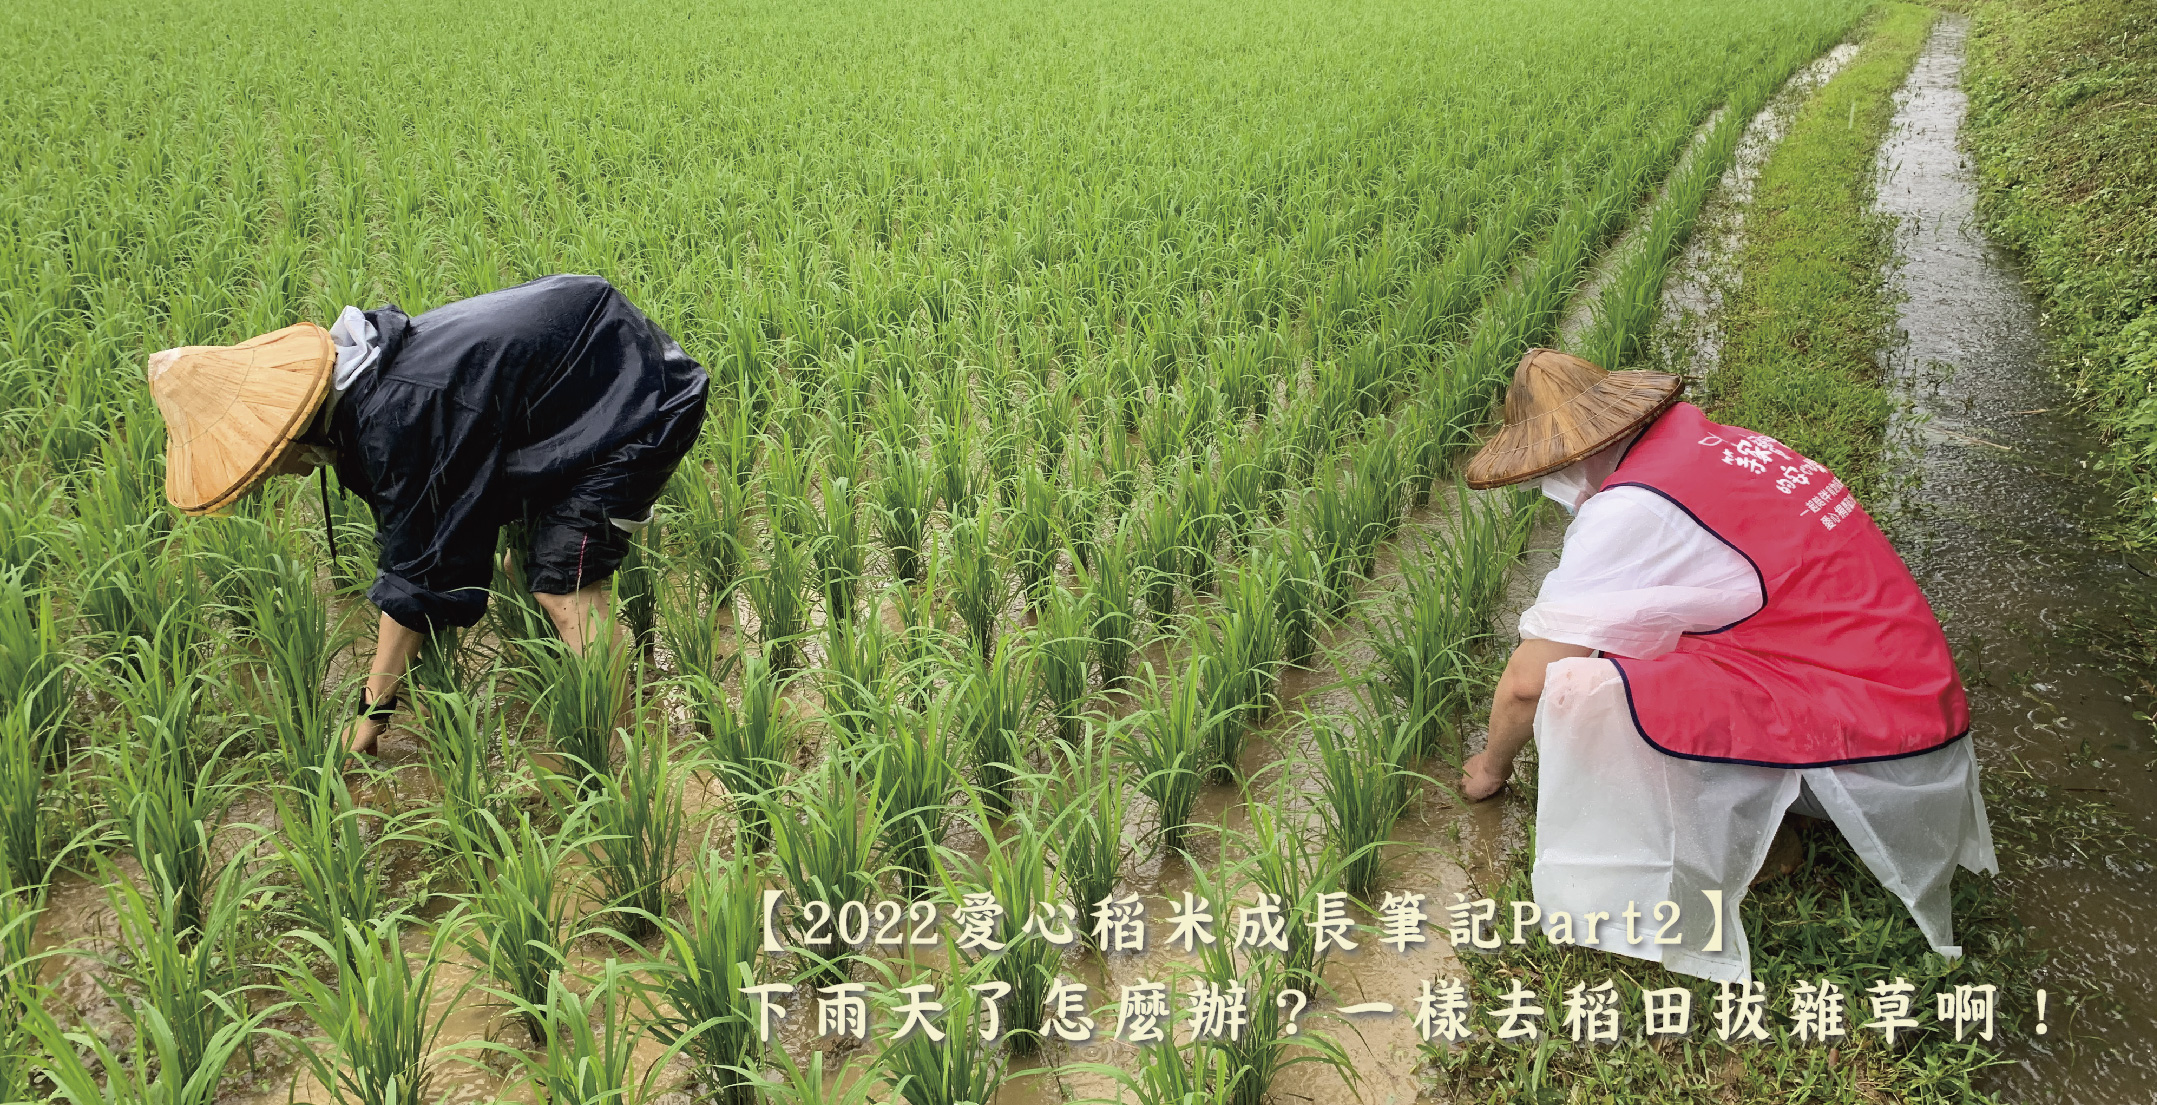 【2022愛心稻米成長筆記Part2】下雨天了怎麼辦？一樣去稻田拔雜草啊！